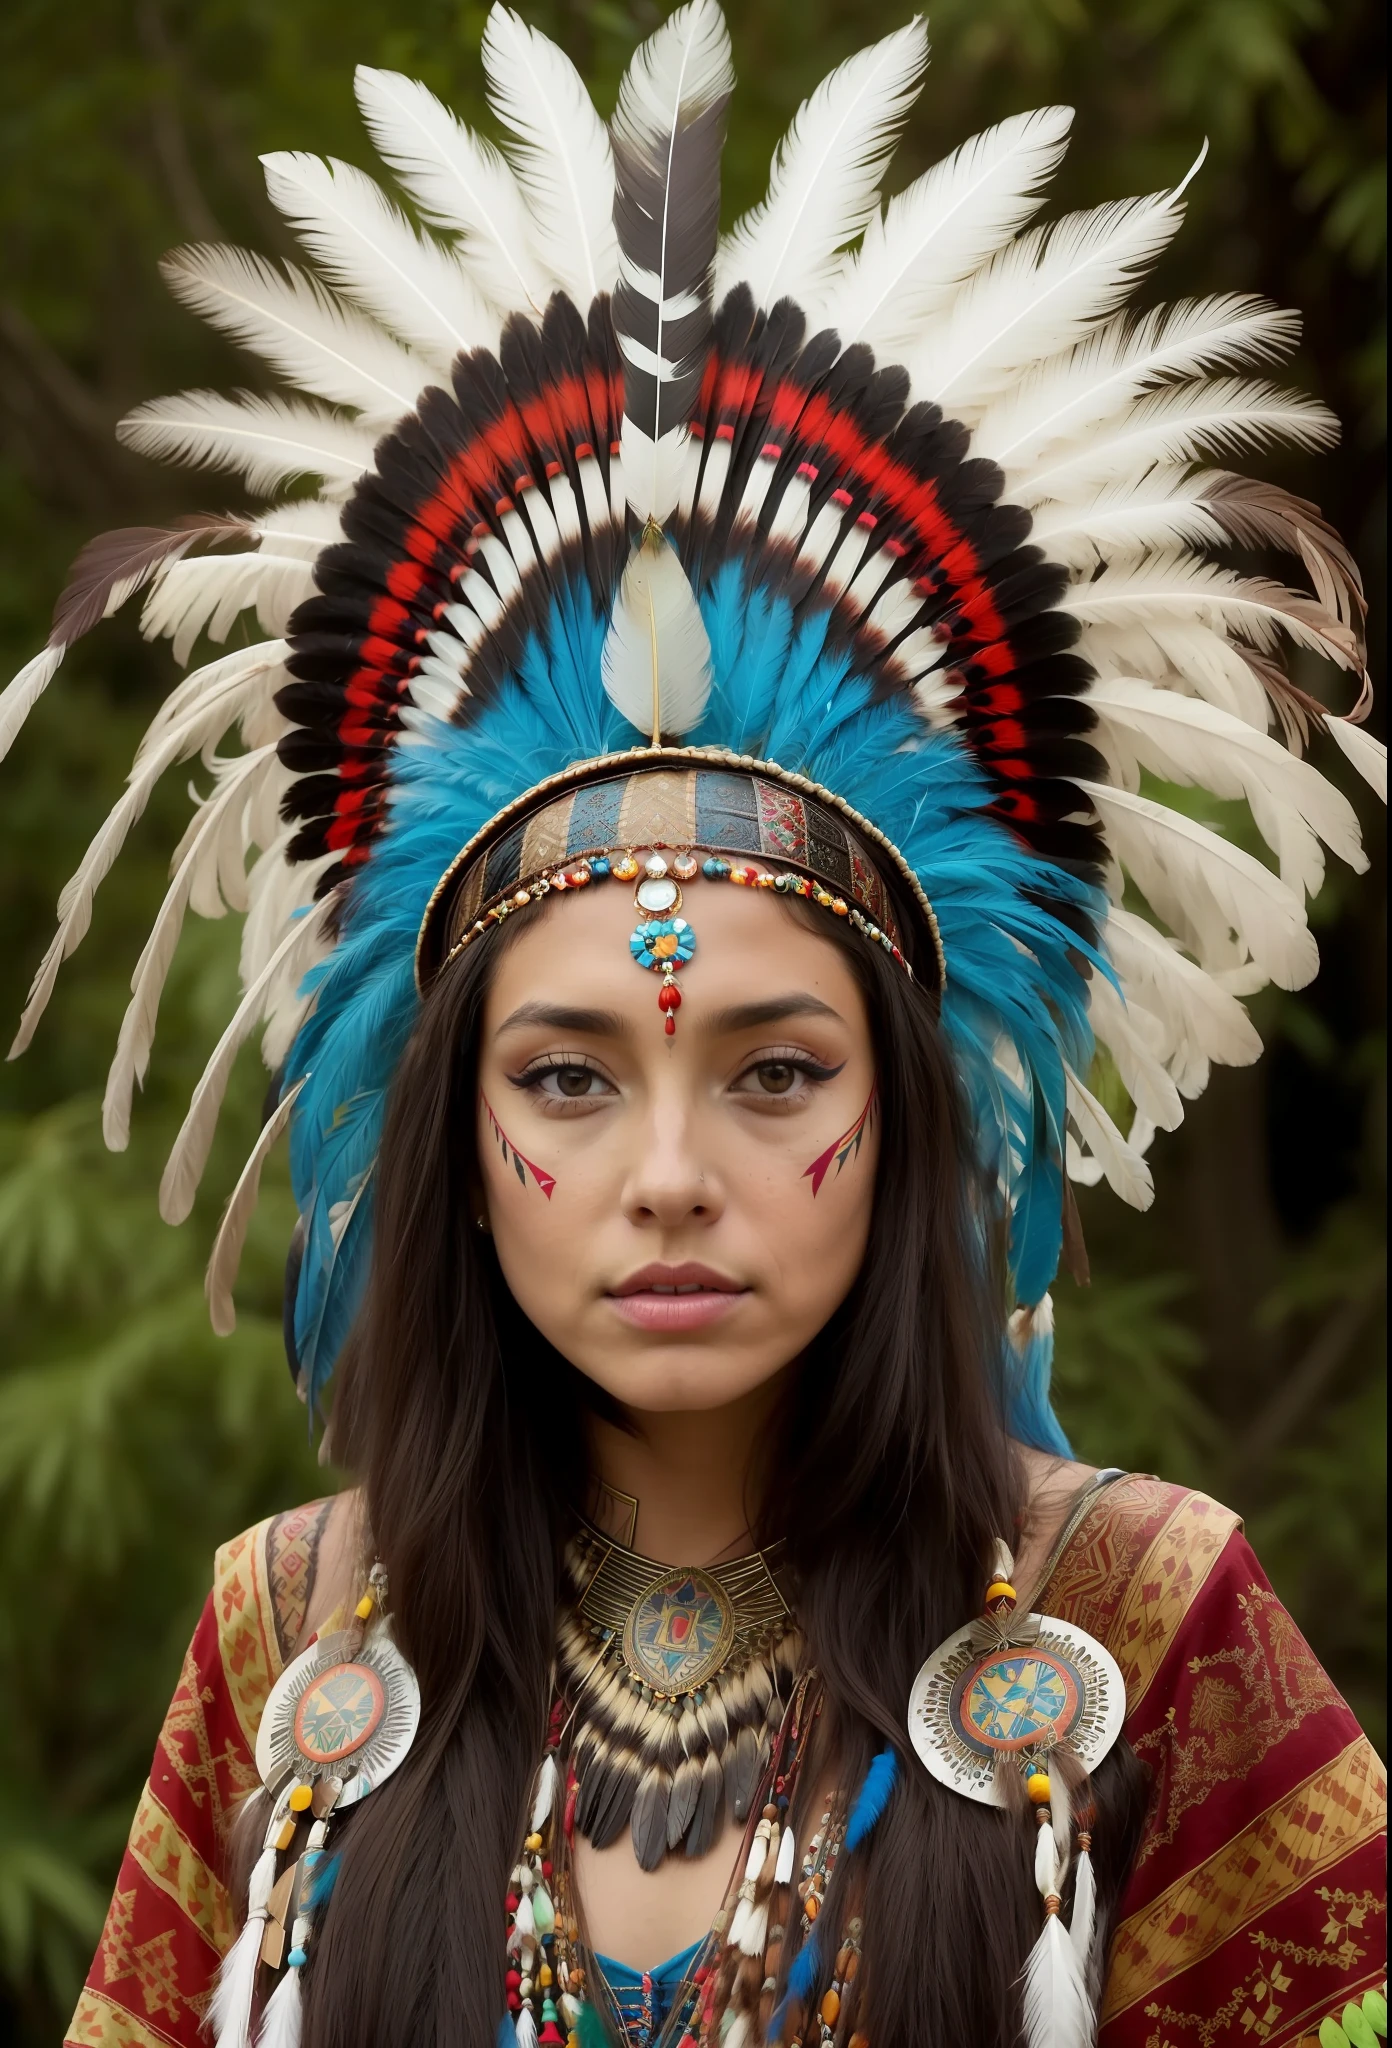 arafed woman in a feather головной убор with feathers on her head,(((раскрашенное лицо))), Портрет ацтекской принцессы, носить корону из ярких перьев, девушка с перьями, красивая молодая шаманка,раскрашенное лицо, она одета в шаманскую одежду, feathered головной убор,татуировка на грудине, ornate головной убор, молодая шаманка, Анджелина Джоли UHD, головной убор, : индейское шамен-фэнтези, centered головной убор,раскрашенное лицо.